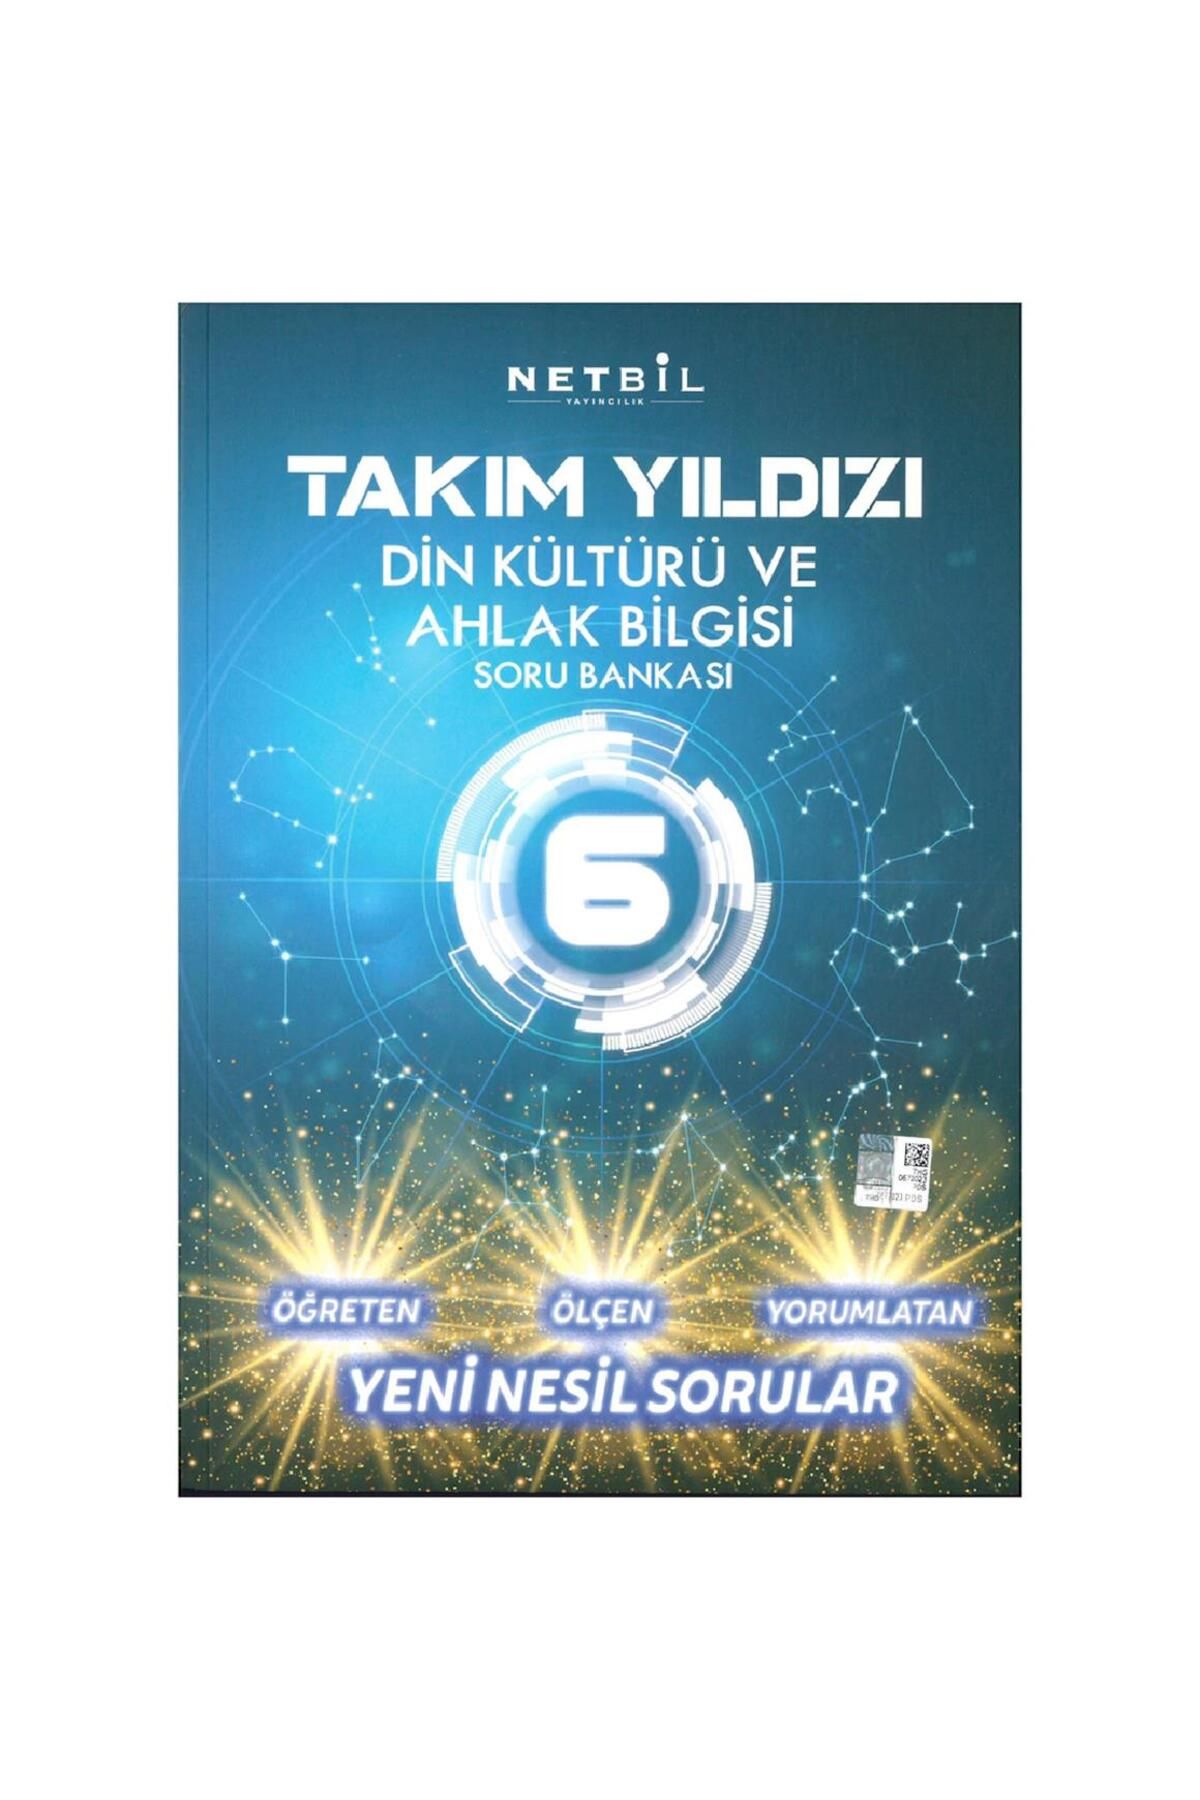 Netbil Yayınları 6. Sınıf Din Kültürü Ve Ahlak Bilgisi Takım Yıldızı Soru Bankası